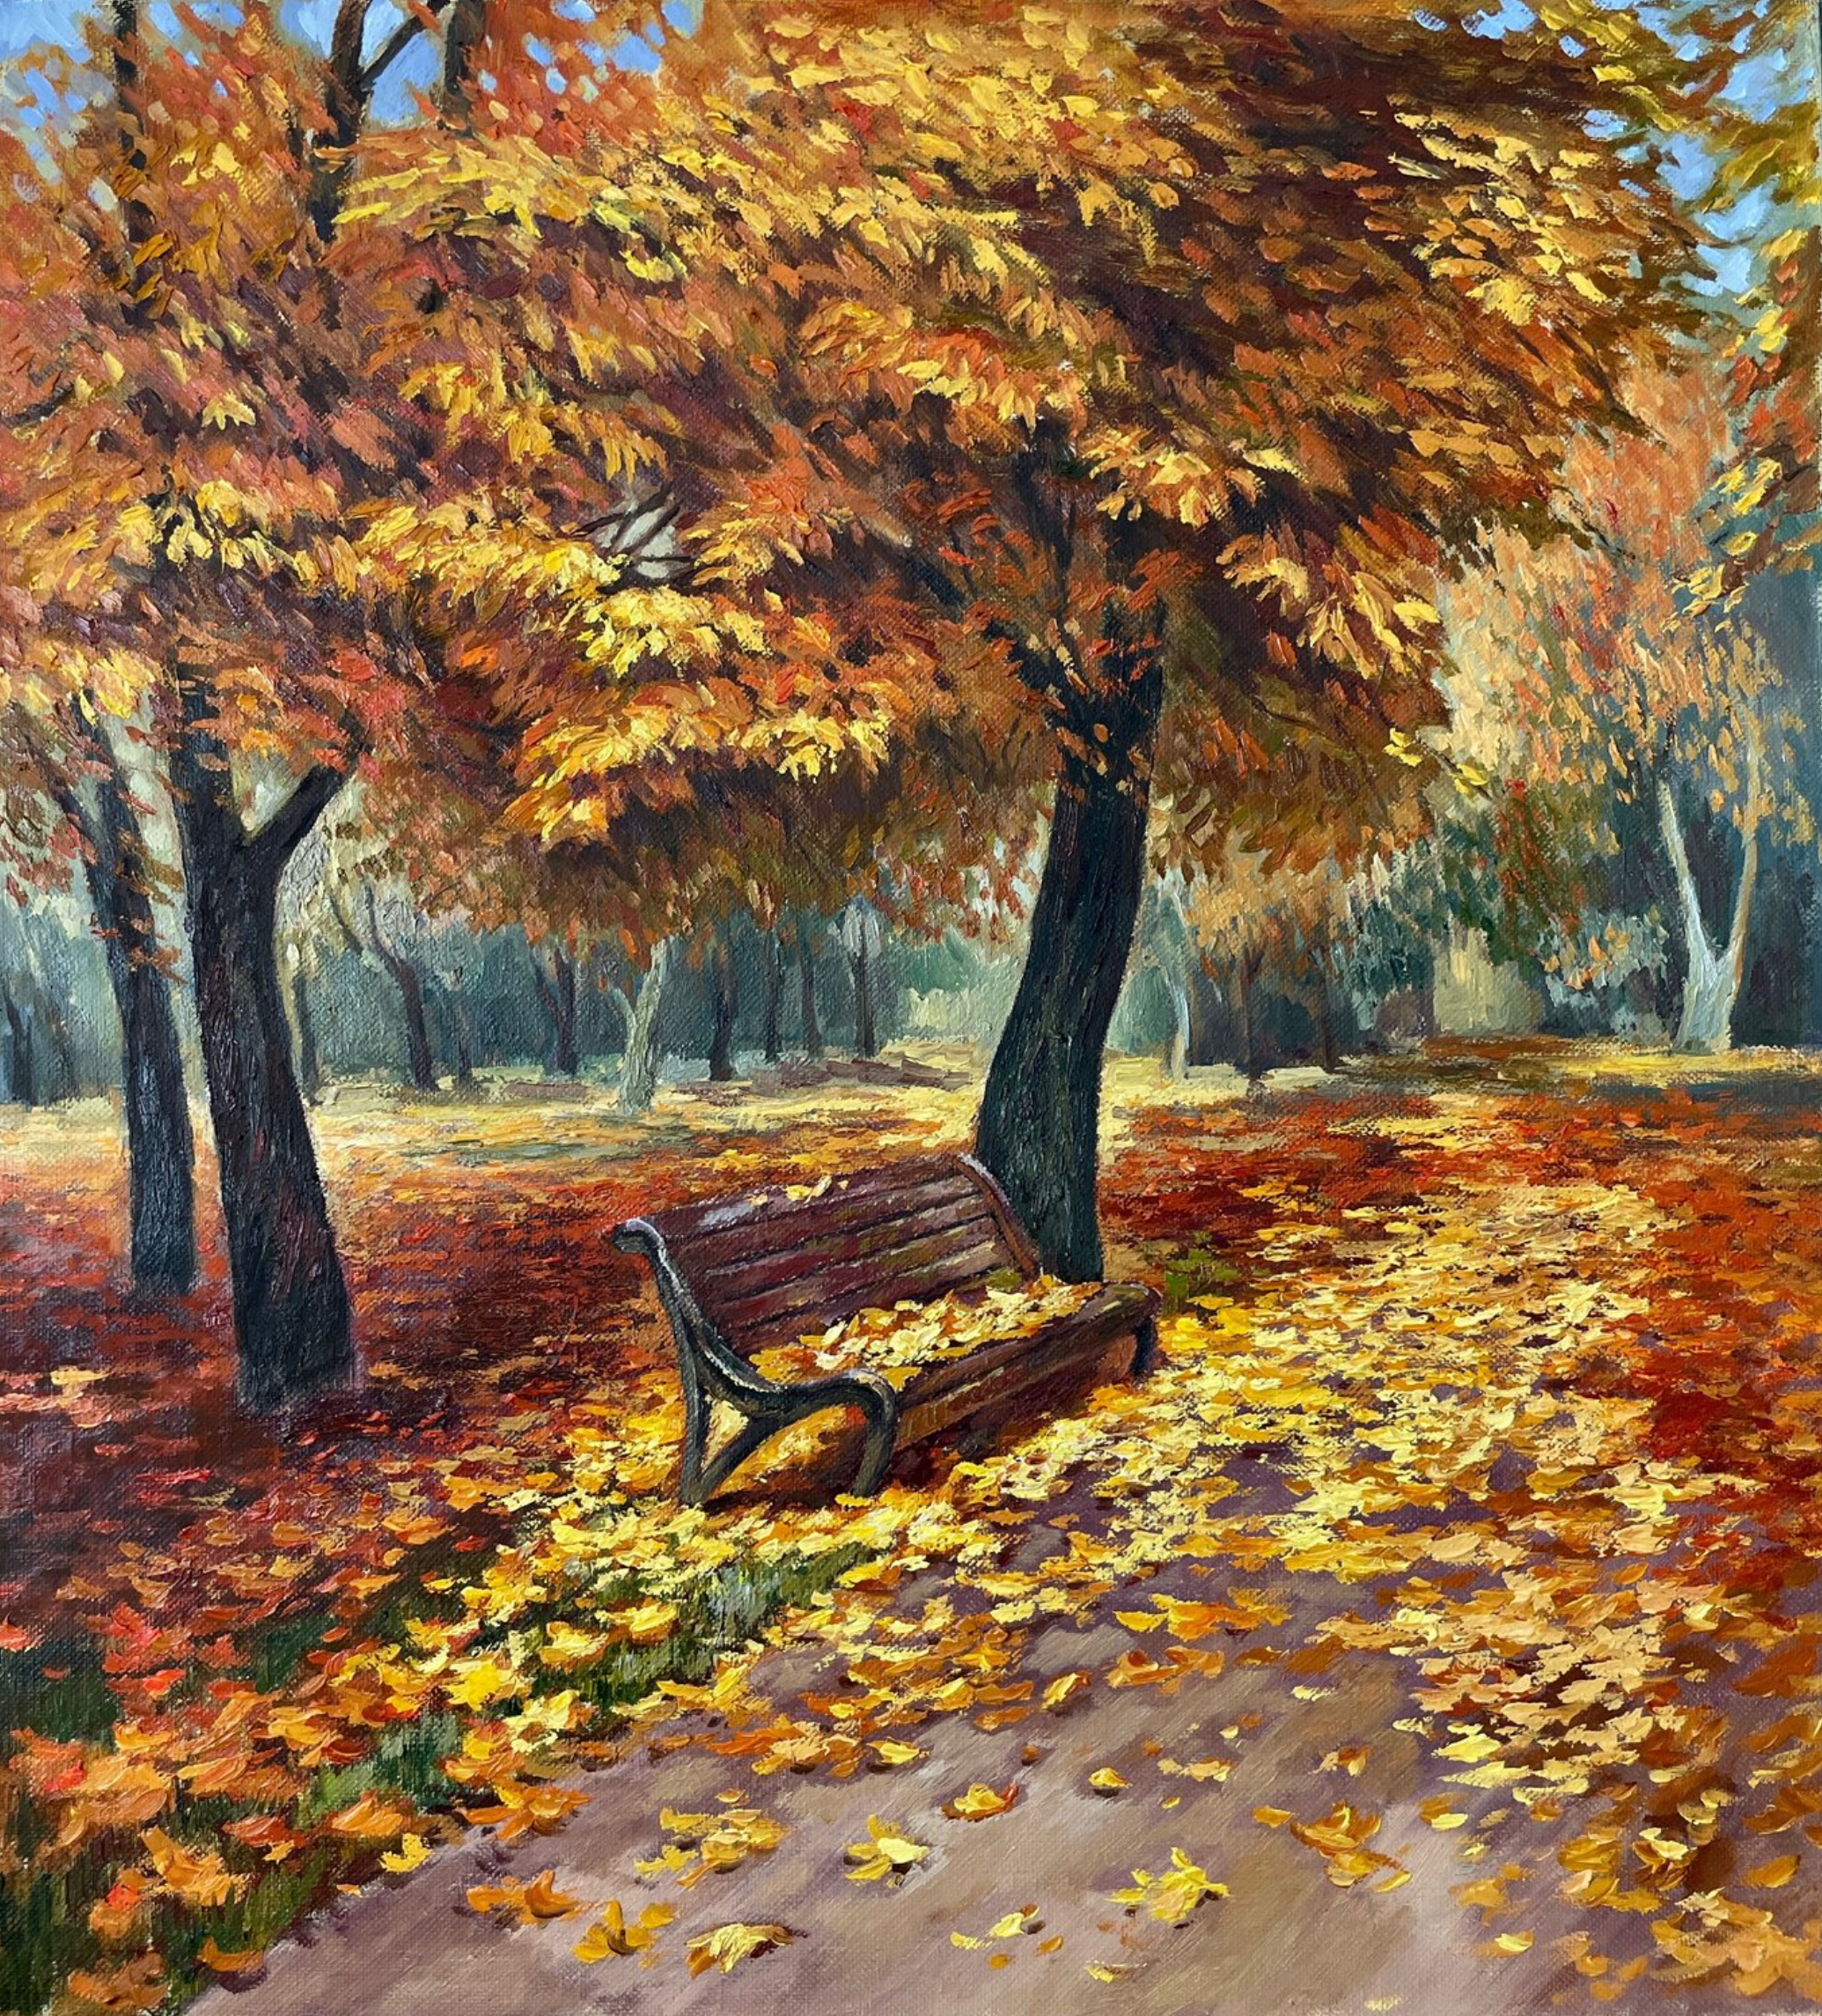 安娜-雷兹尼科娃的 "落叶 "画展示了一个美妙的秋季景观。公园的长椅上有棕色、黄色、红色的奇妙的秋叶。用毛笔在棉布上画的。